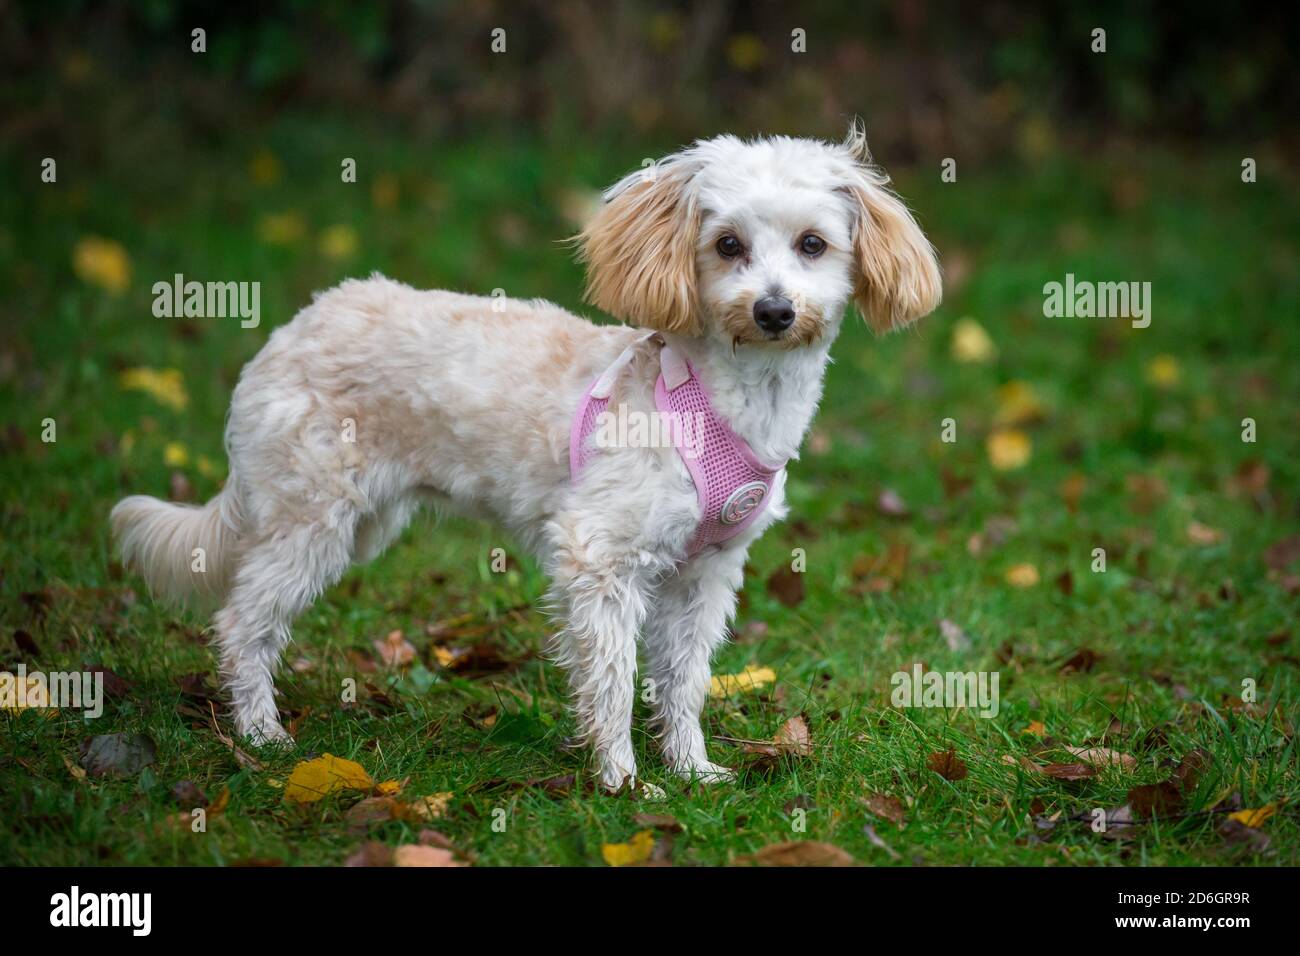 Maltipoo cucciolo, una razza di cane designer di Poodle x cane maltese, che indossa un imbragatura di cane rosa Foto Stock